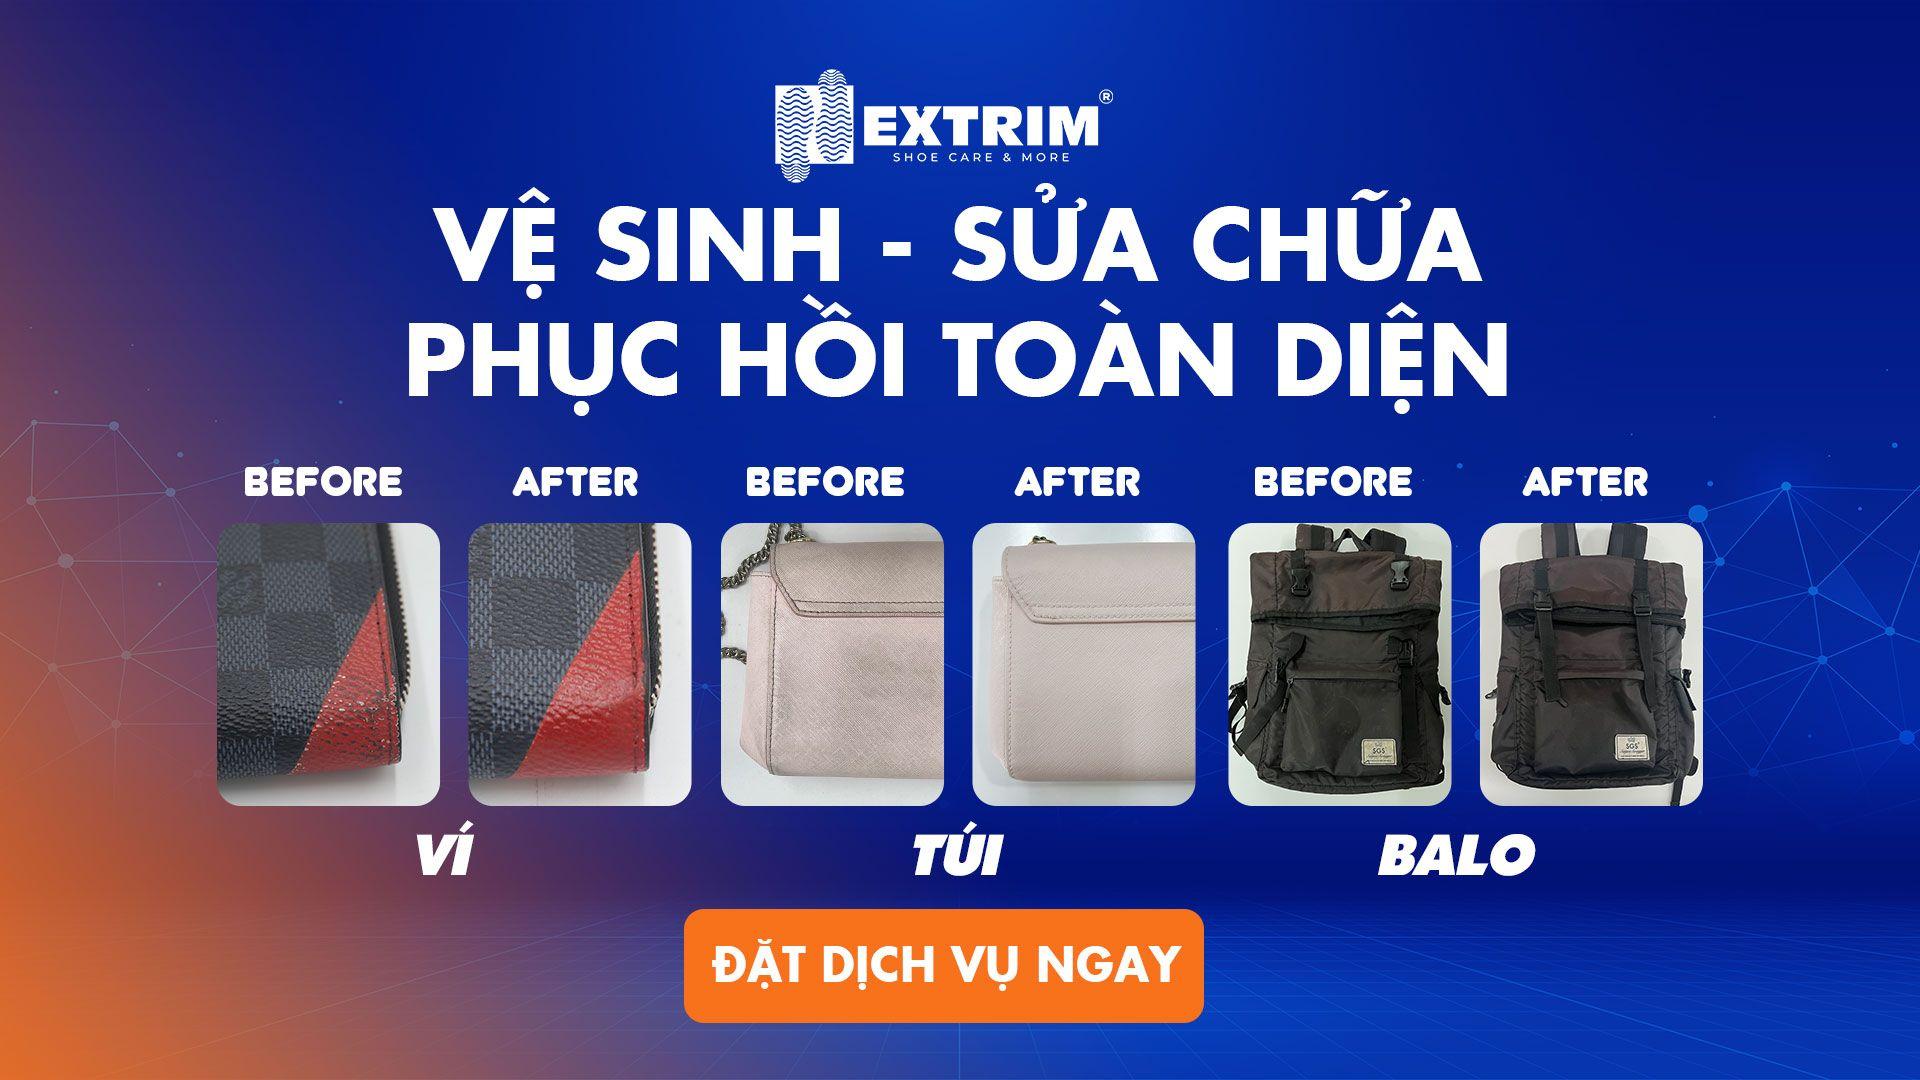 Bảng giá chi tiết Dịch vụ vệ sinh túi xách tại Extrim - Giao nhận tận nơi